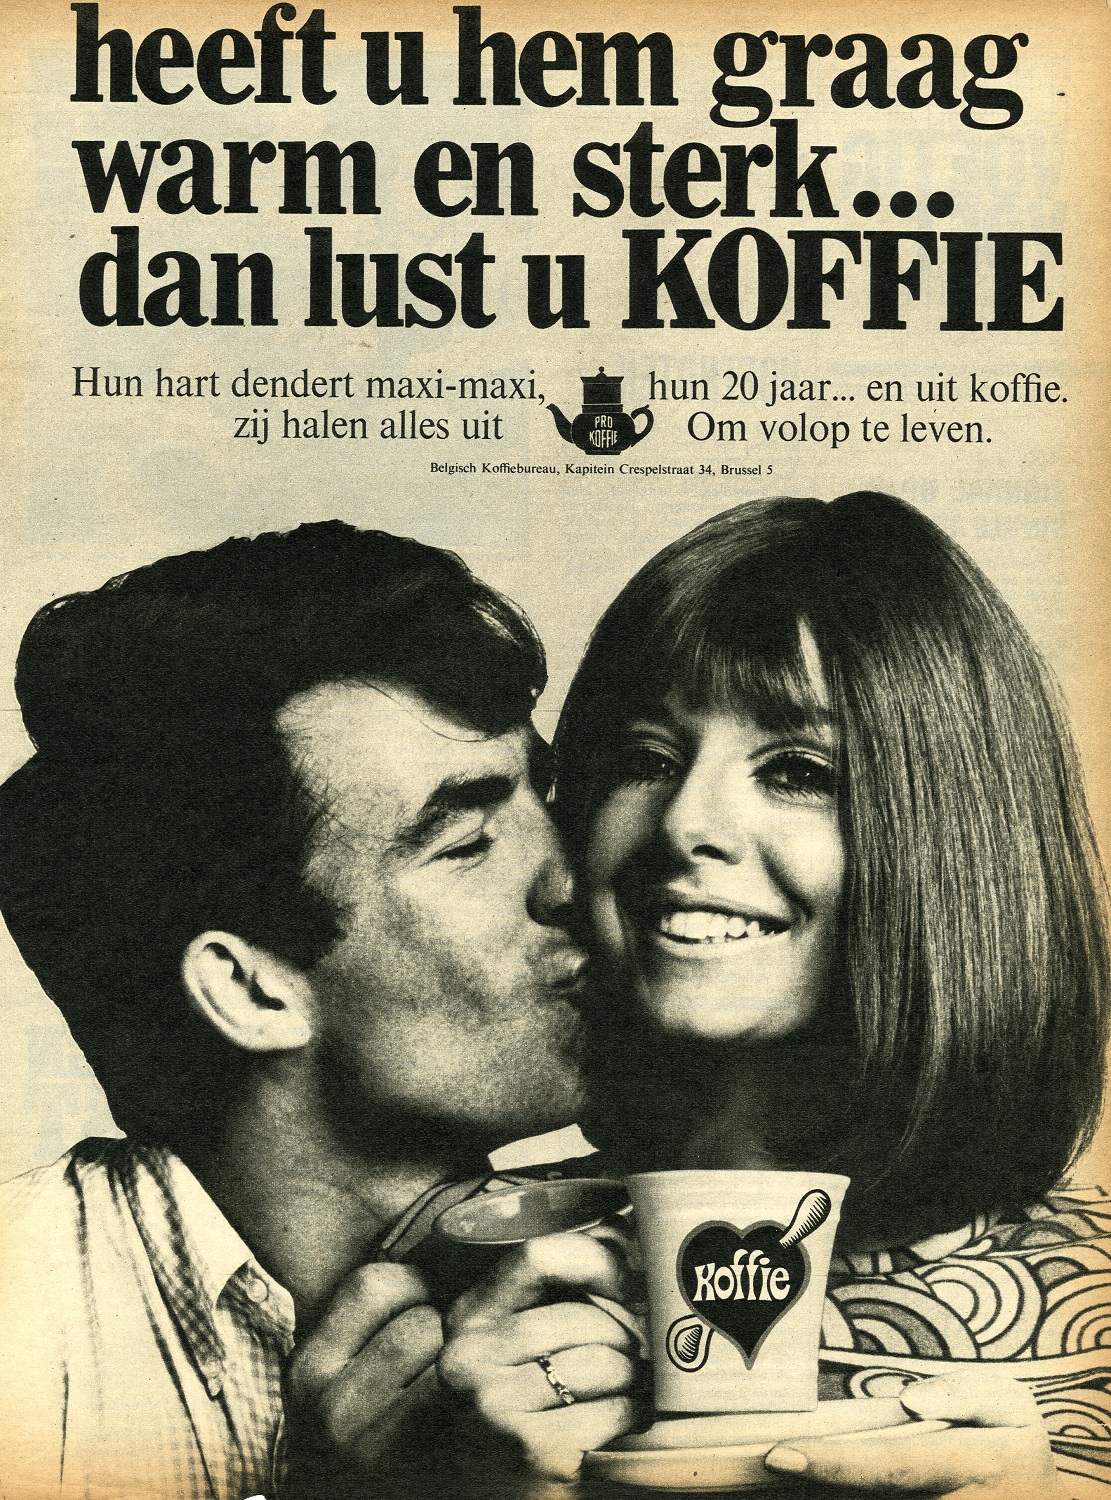 Ook het Belgische Koffie-Verbond zet in de jaren 1960 in op het promoten van sterkere koffie. Collectie Huis van Alijn, Gent.